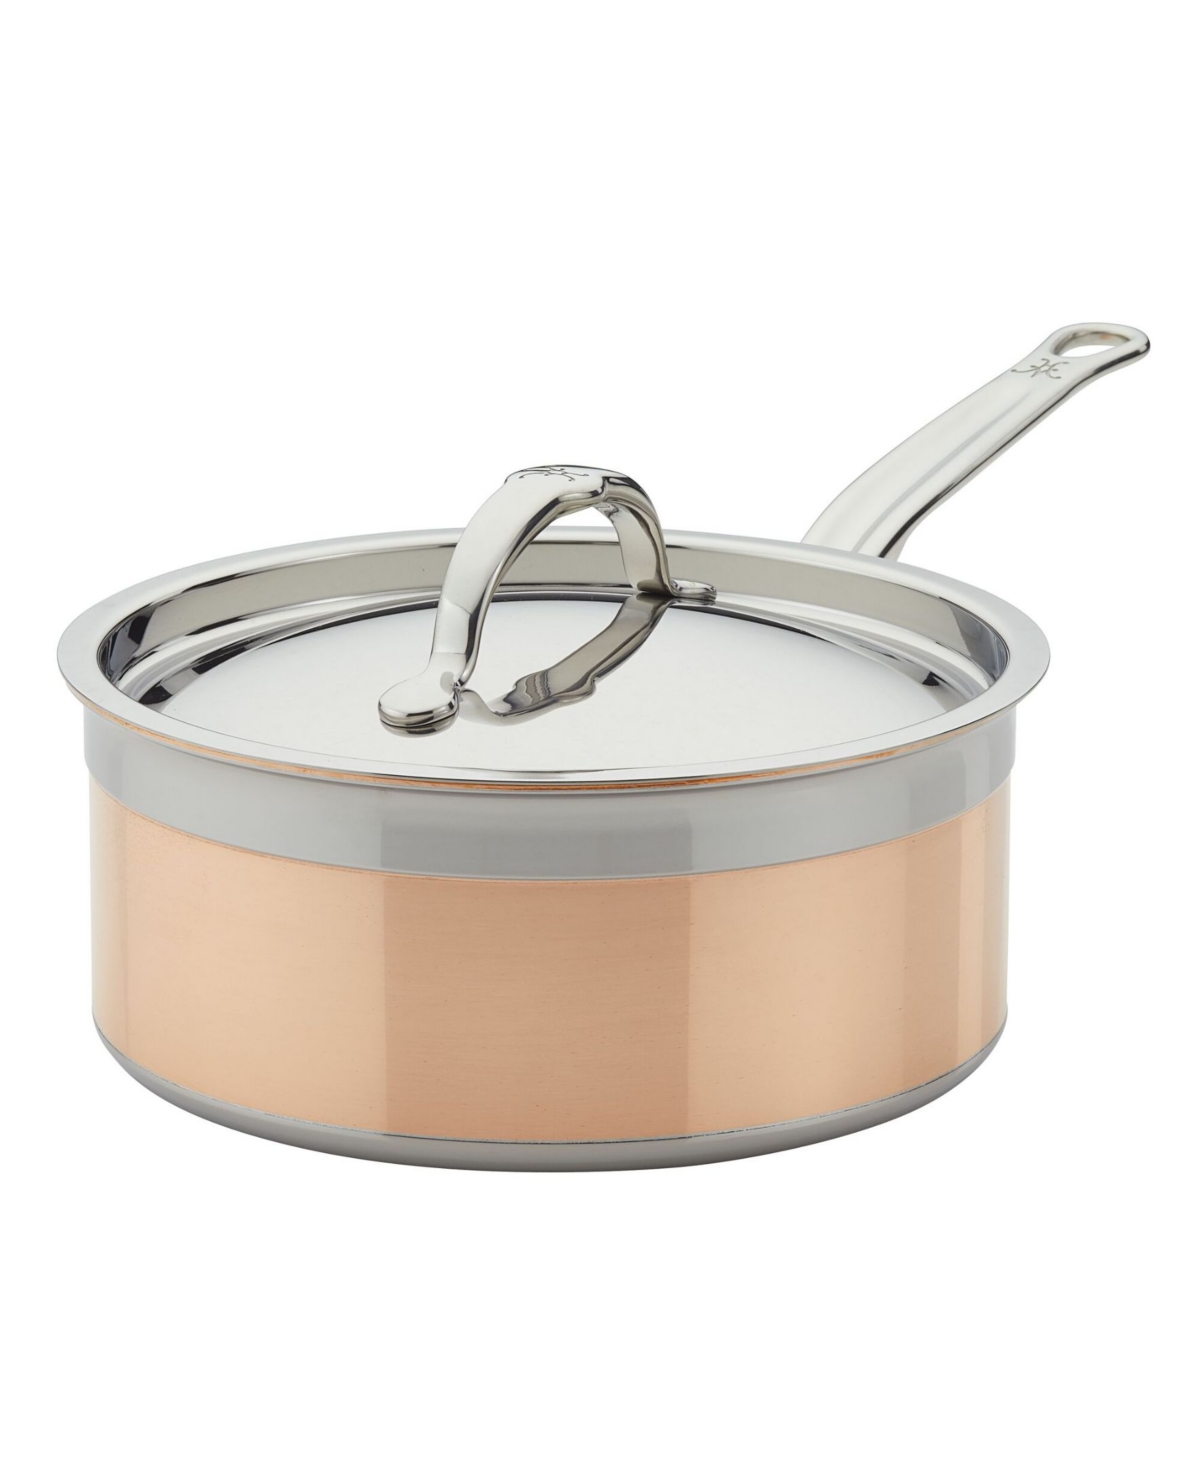 Shop Hestan Copperbond Copper Induction 3-quart Covered Saucepan